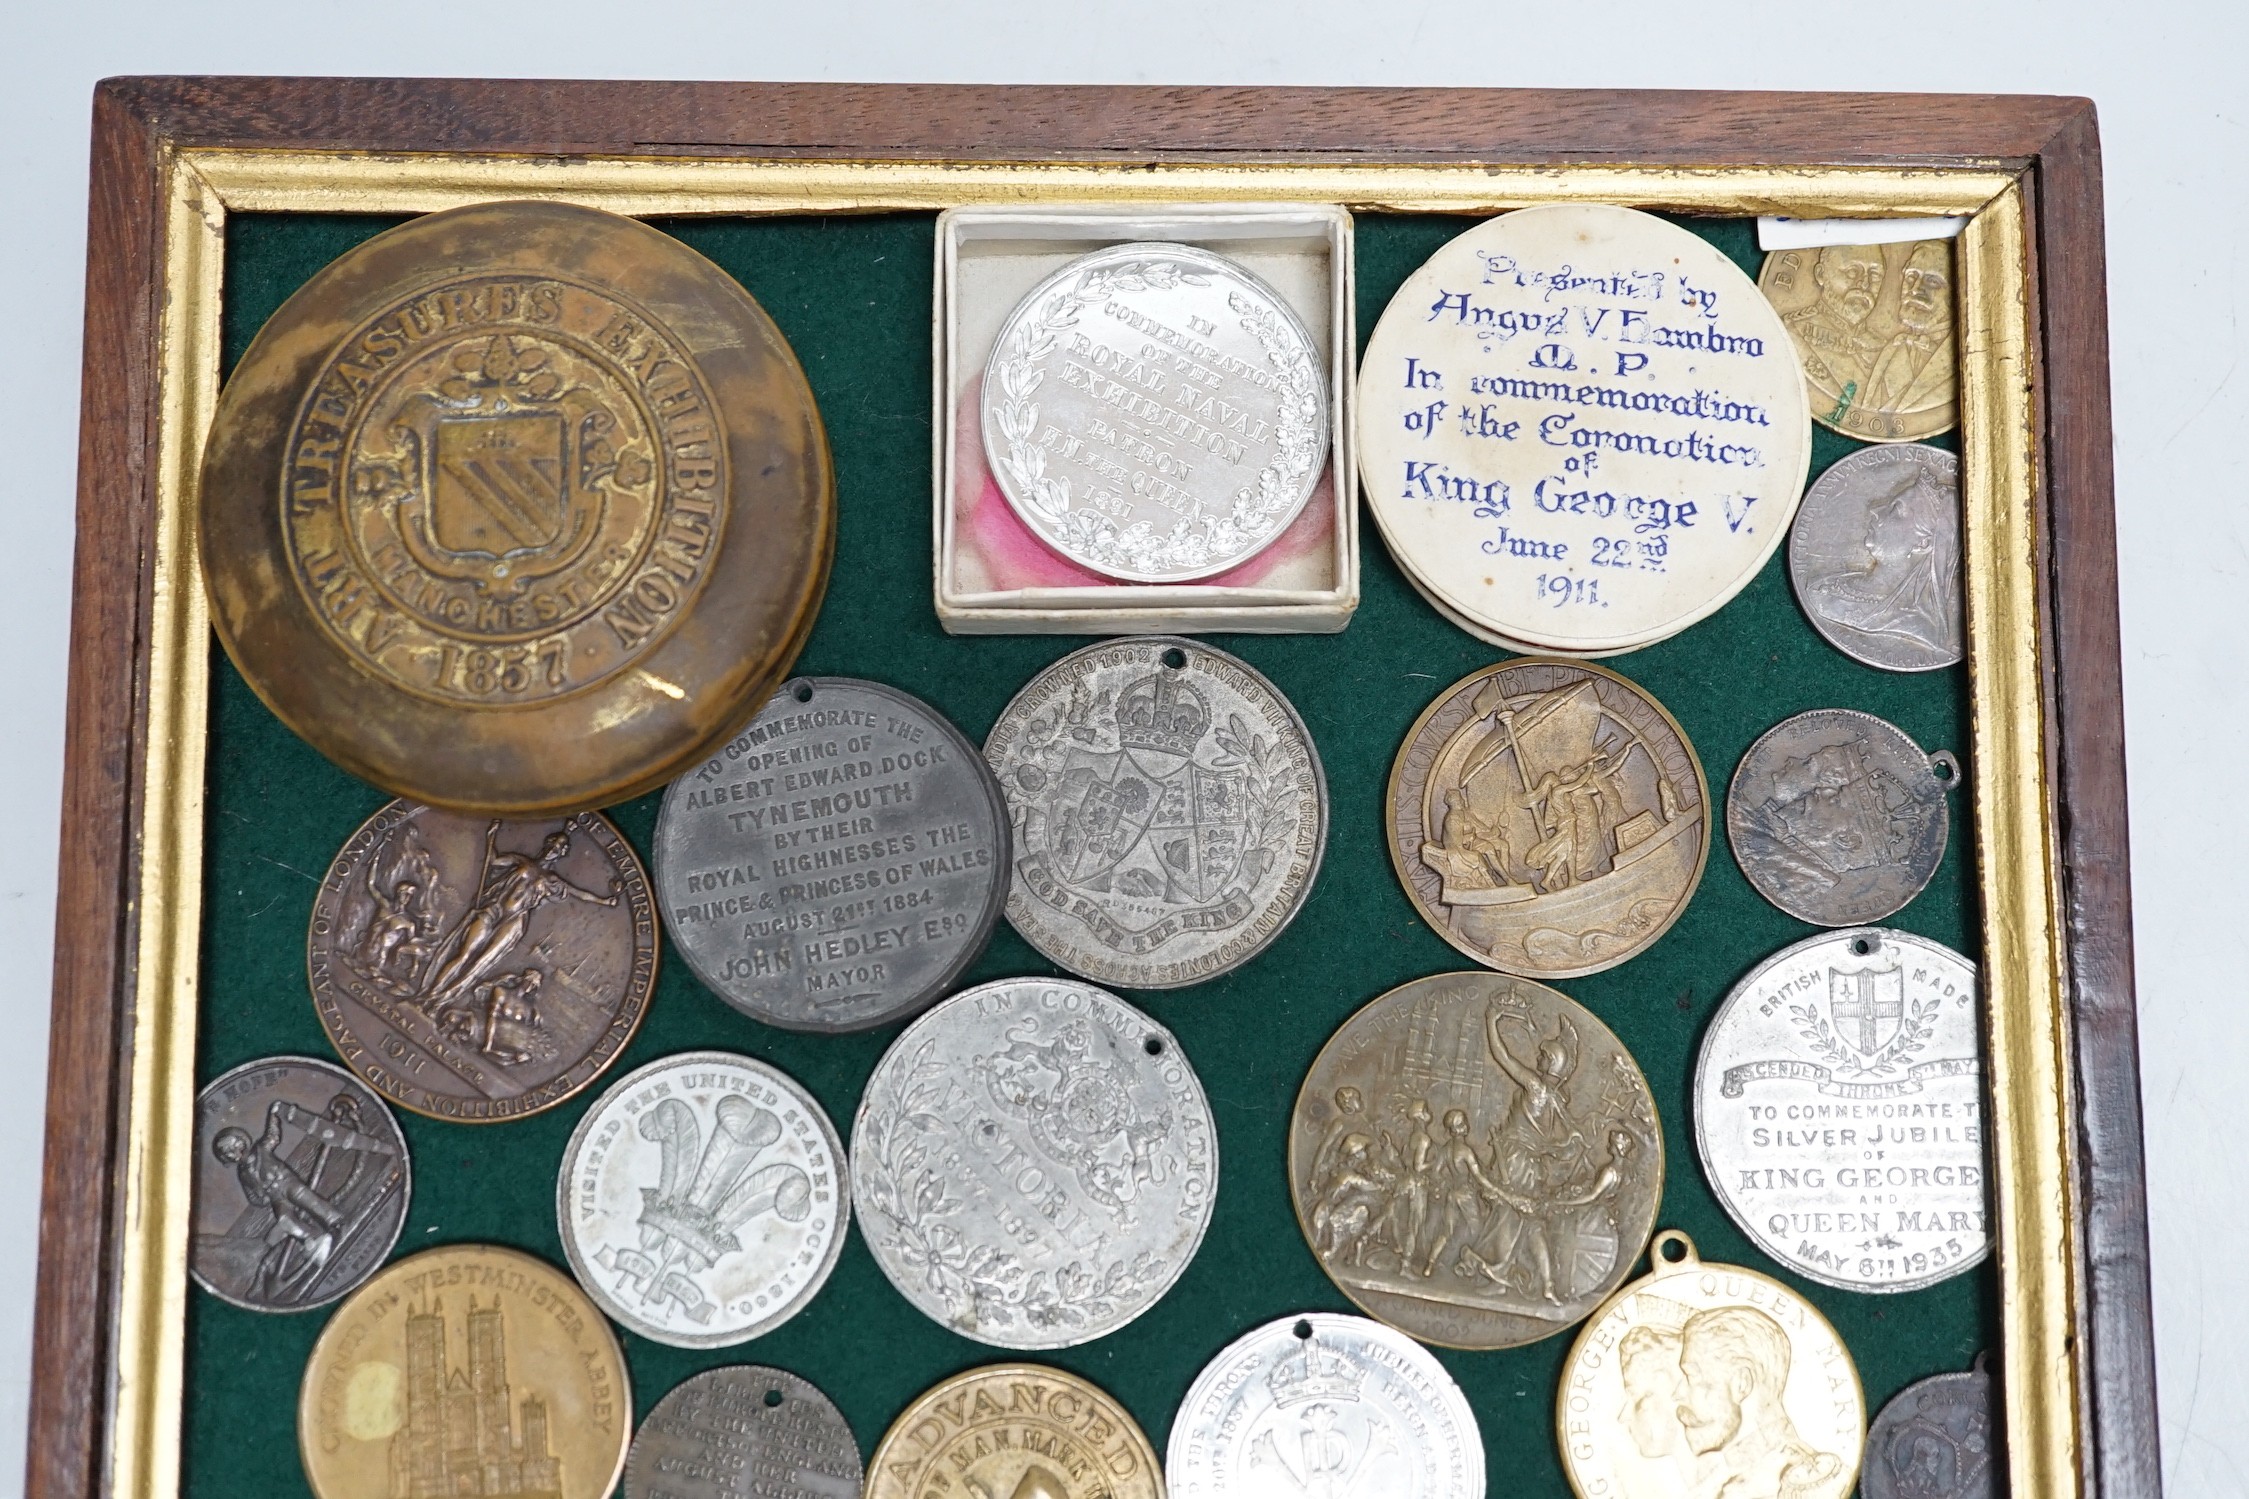 19th/20th century British commemorative medals –